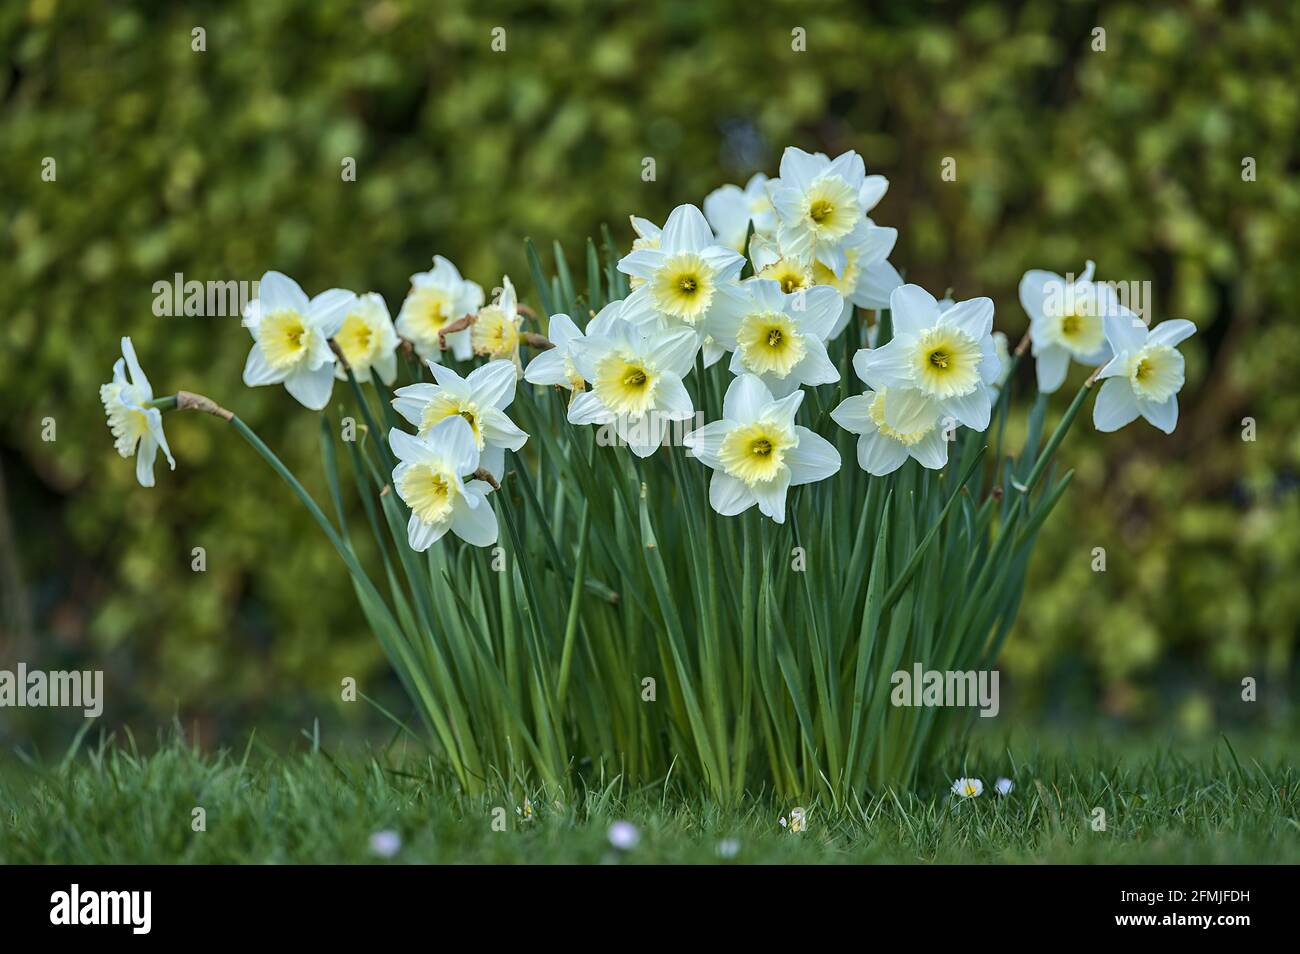 Belle vue de près du sol basse des jonquilles blanches de printemps (Narcissus) avec corona jaune à Marlay Park, Dublin, Irlande. Mise au point douce et sélective. Banque D'Images